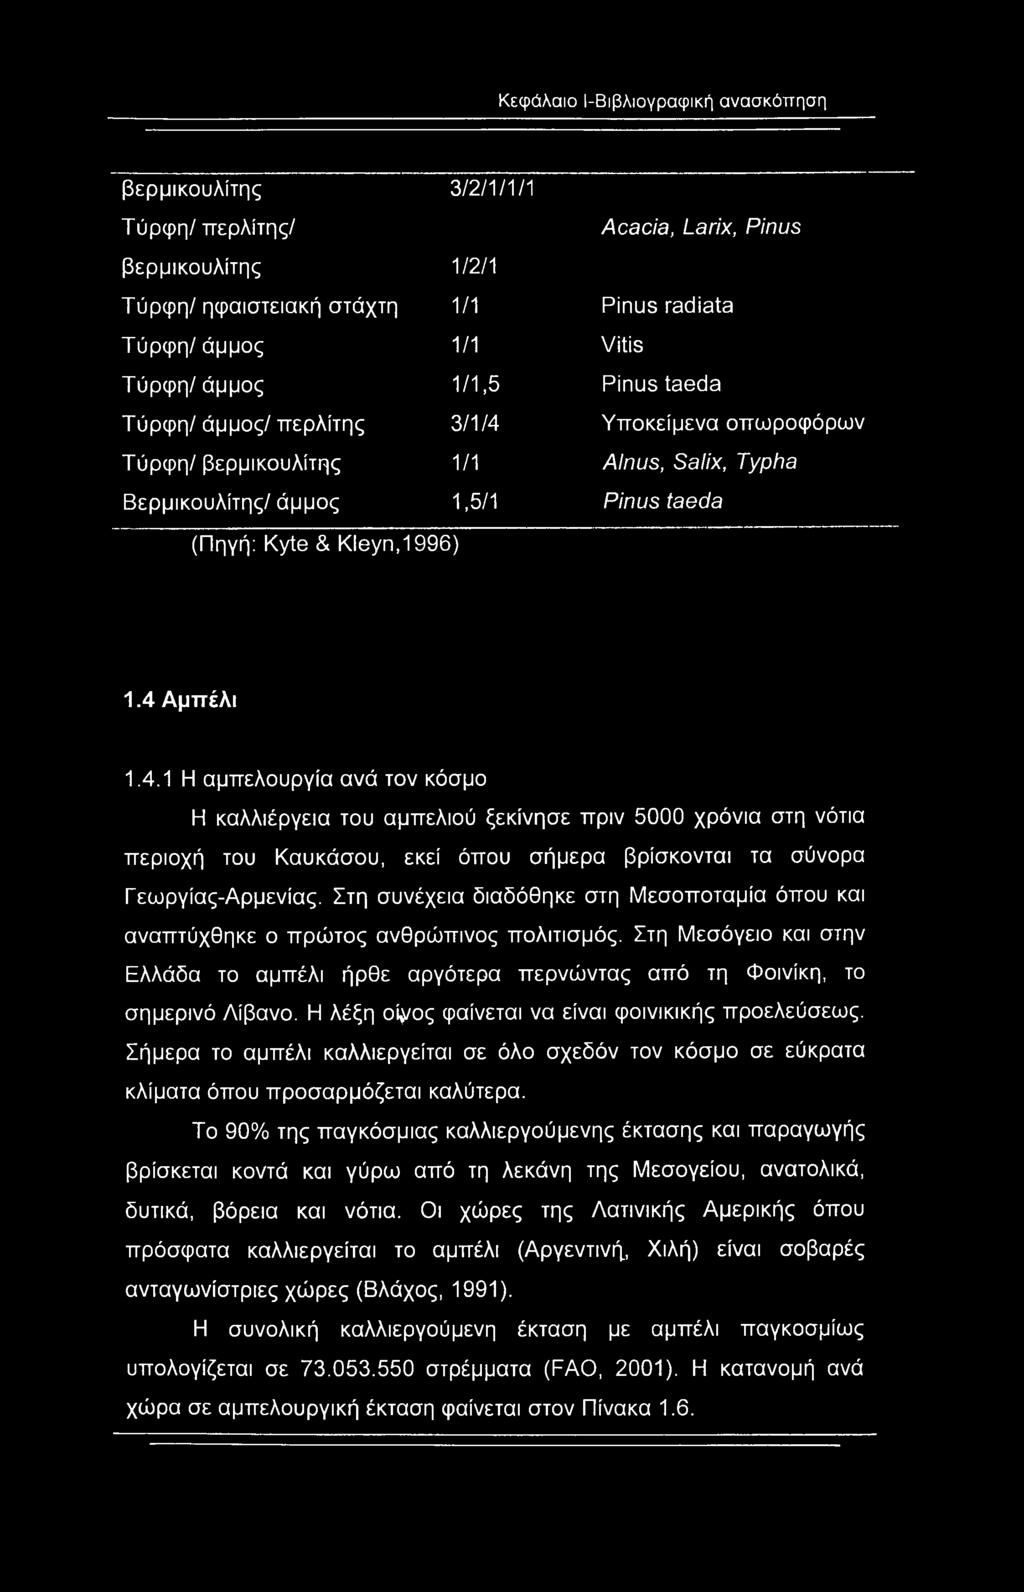 Υποκείμενα οπωροφόρων Τύρφη/ βερμικουλίτης 1/1 Alnus, Salix, Typha Βερμικουλίτης/ άμμος 1,5/1 Pinus taeda (Πηγή: Kyte & Kleyn,1996) 1.4 